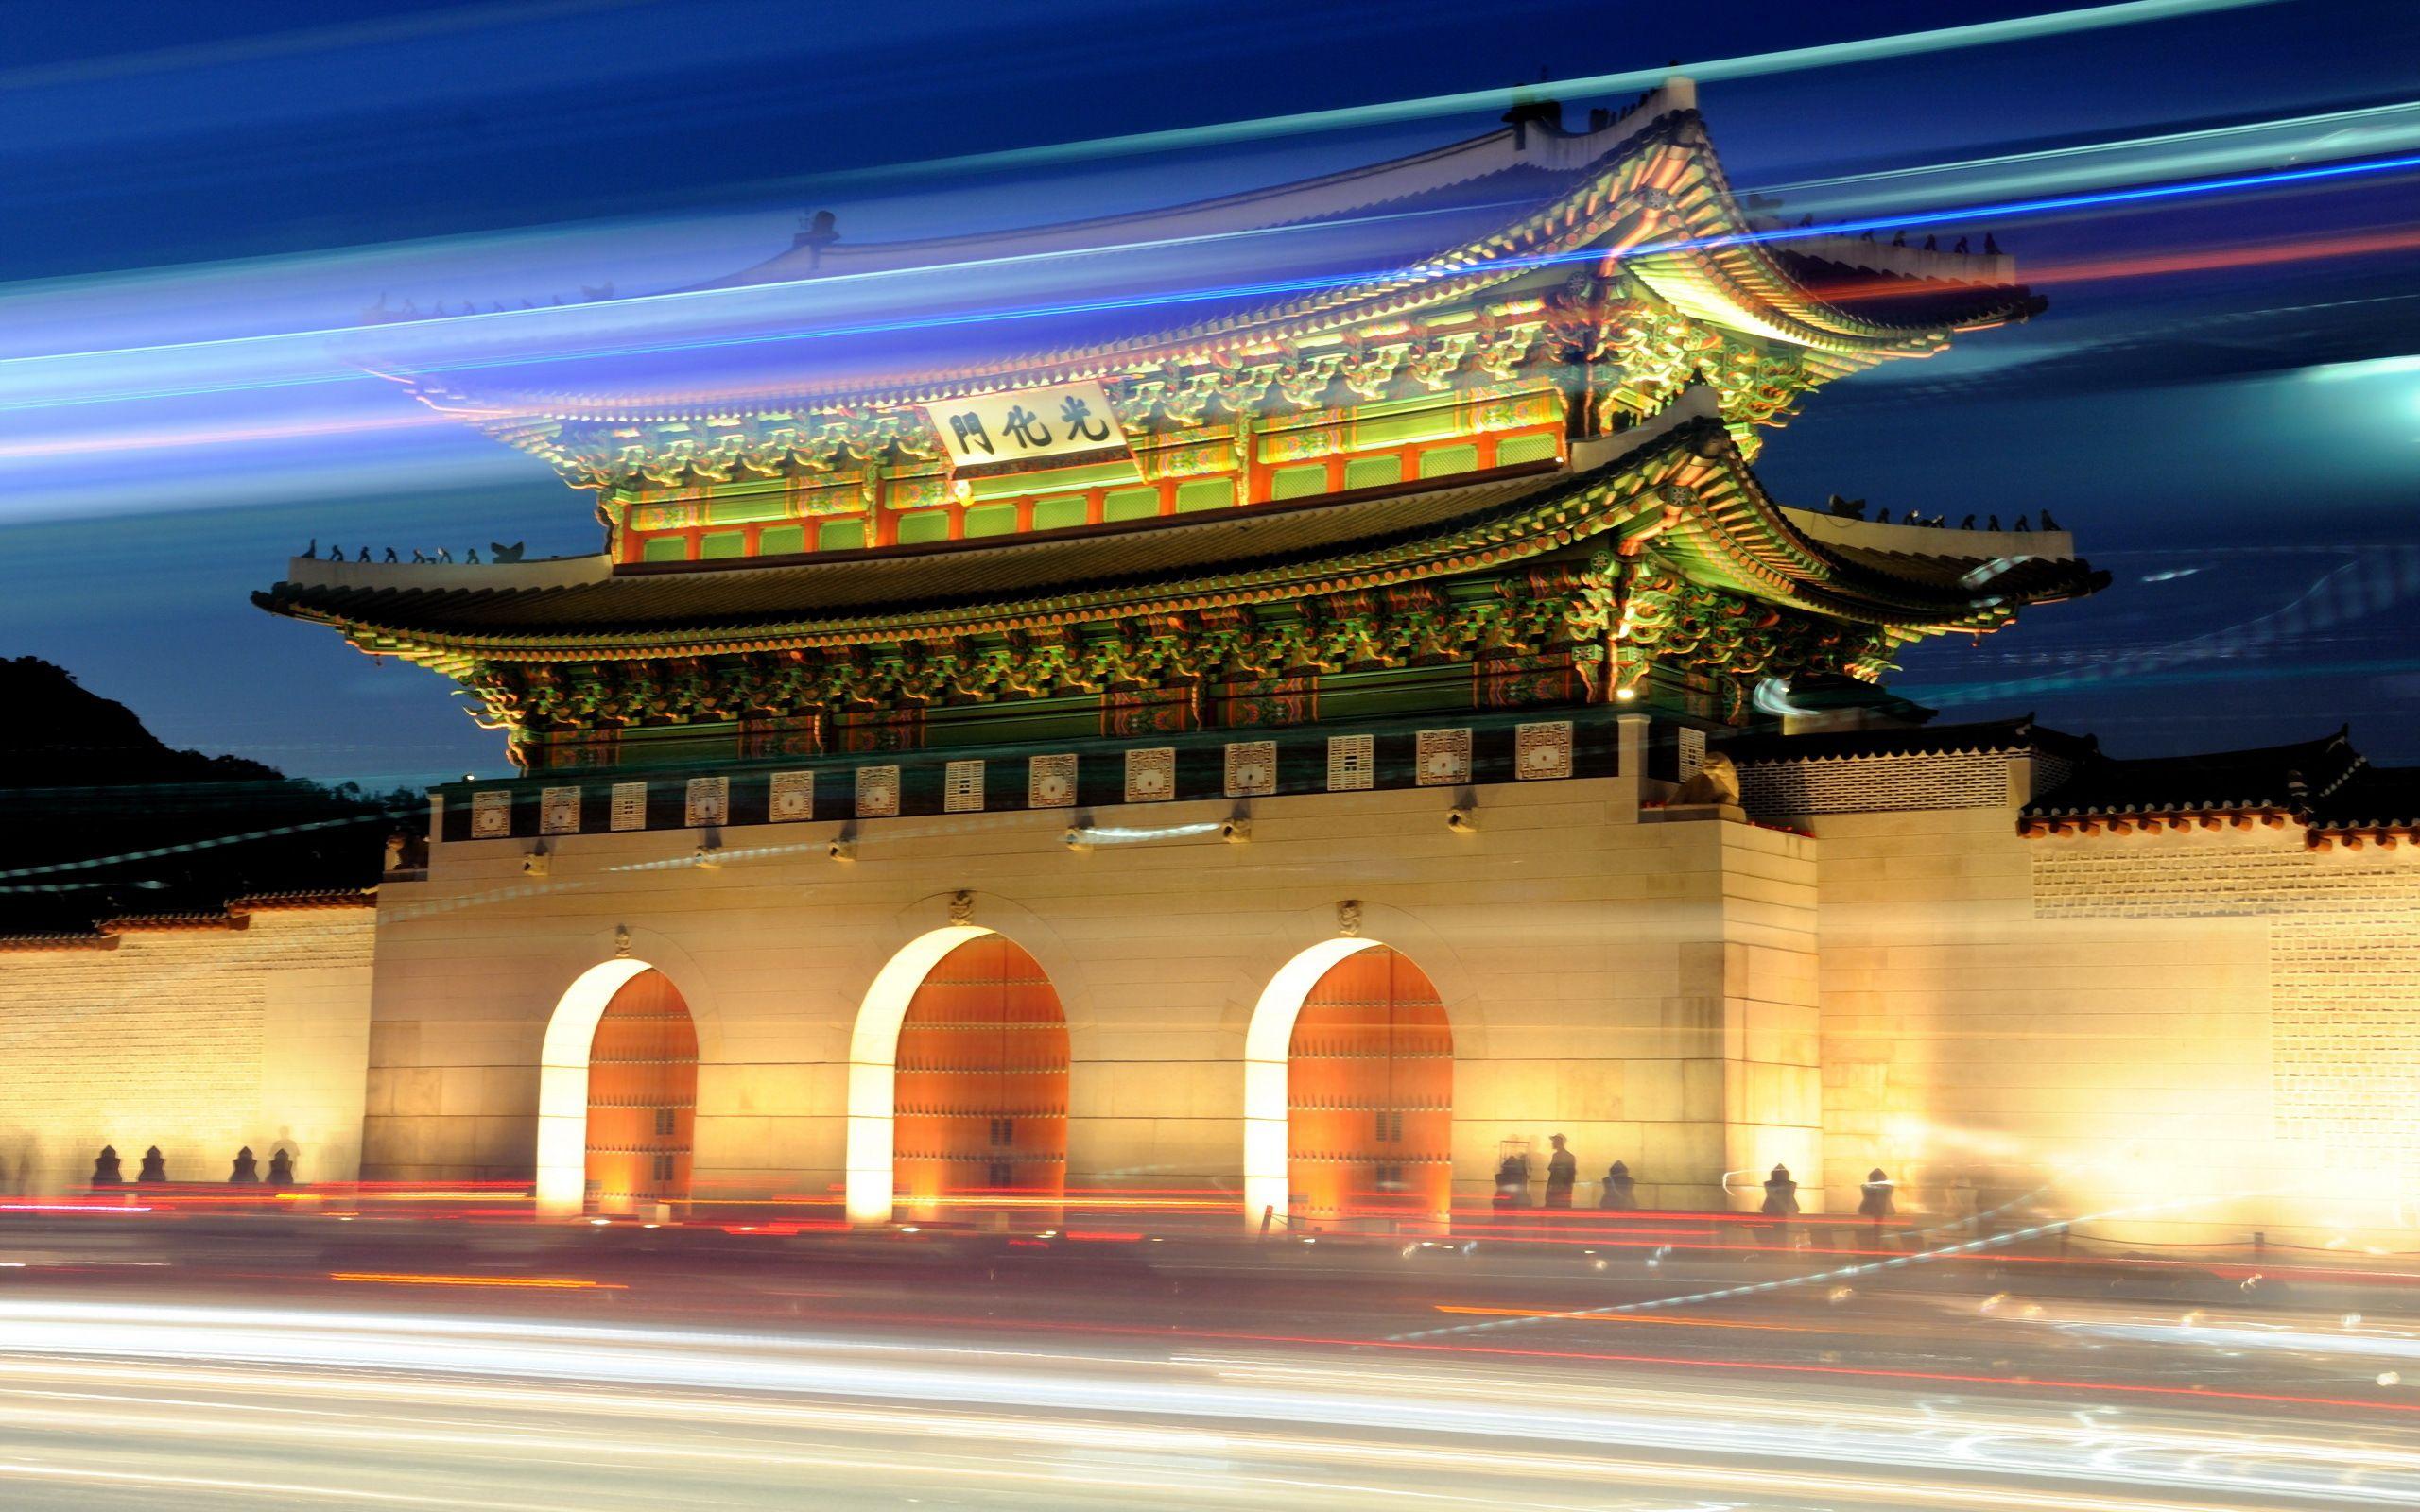 Korea HD Desktop Wallpapers - Top Free Korea HD Desktop Backgrounds